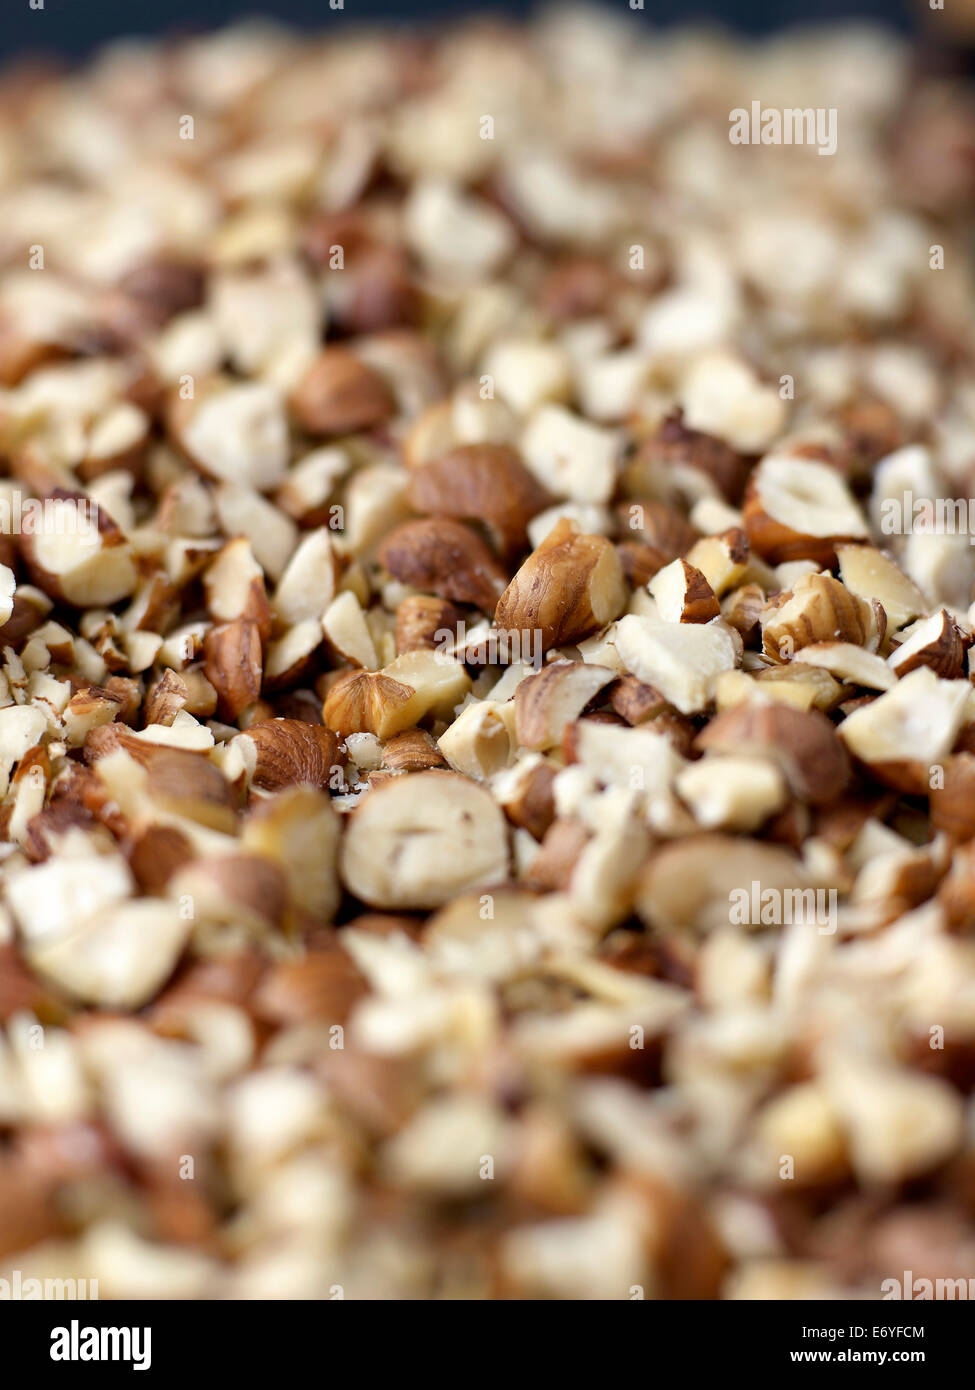 Coarsly crushed hazelnuts Stock Photo